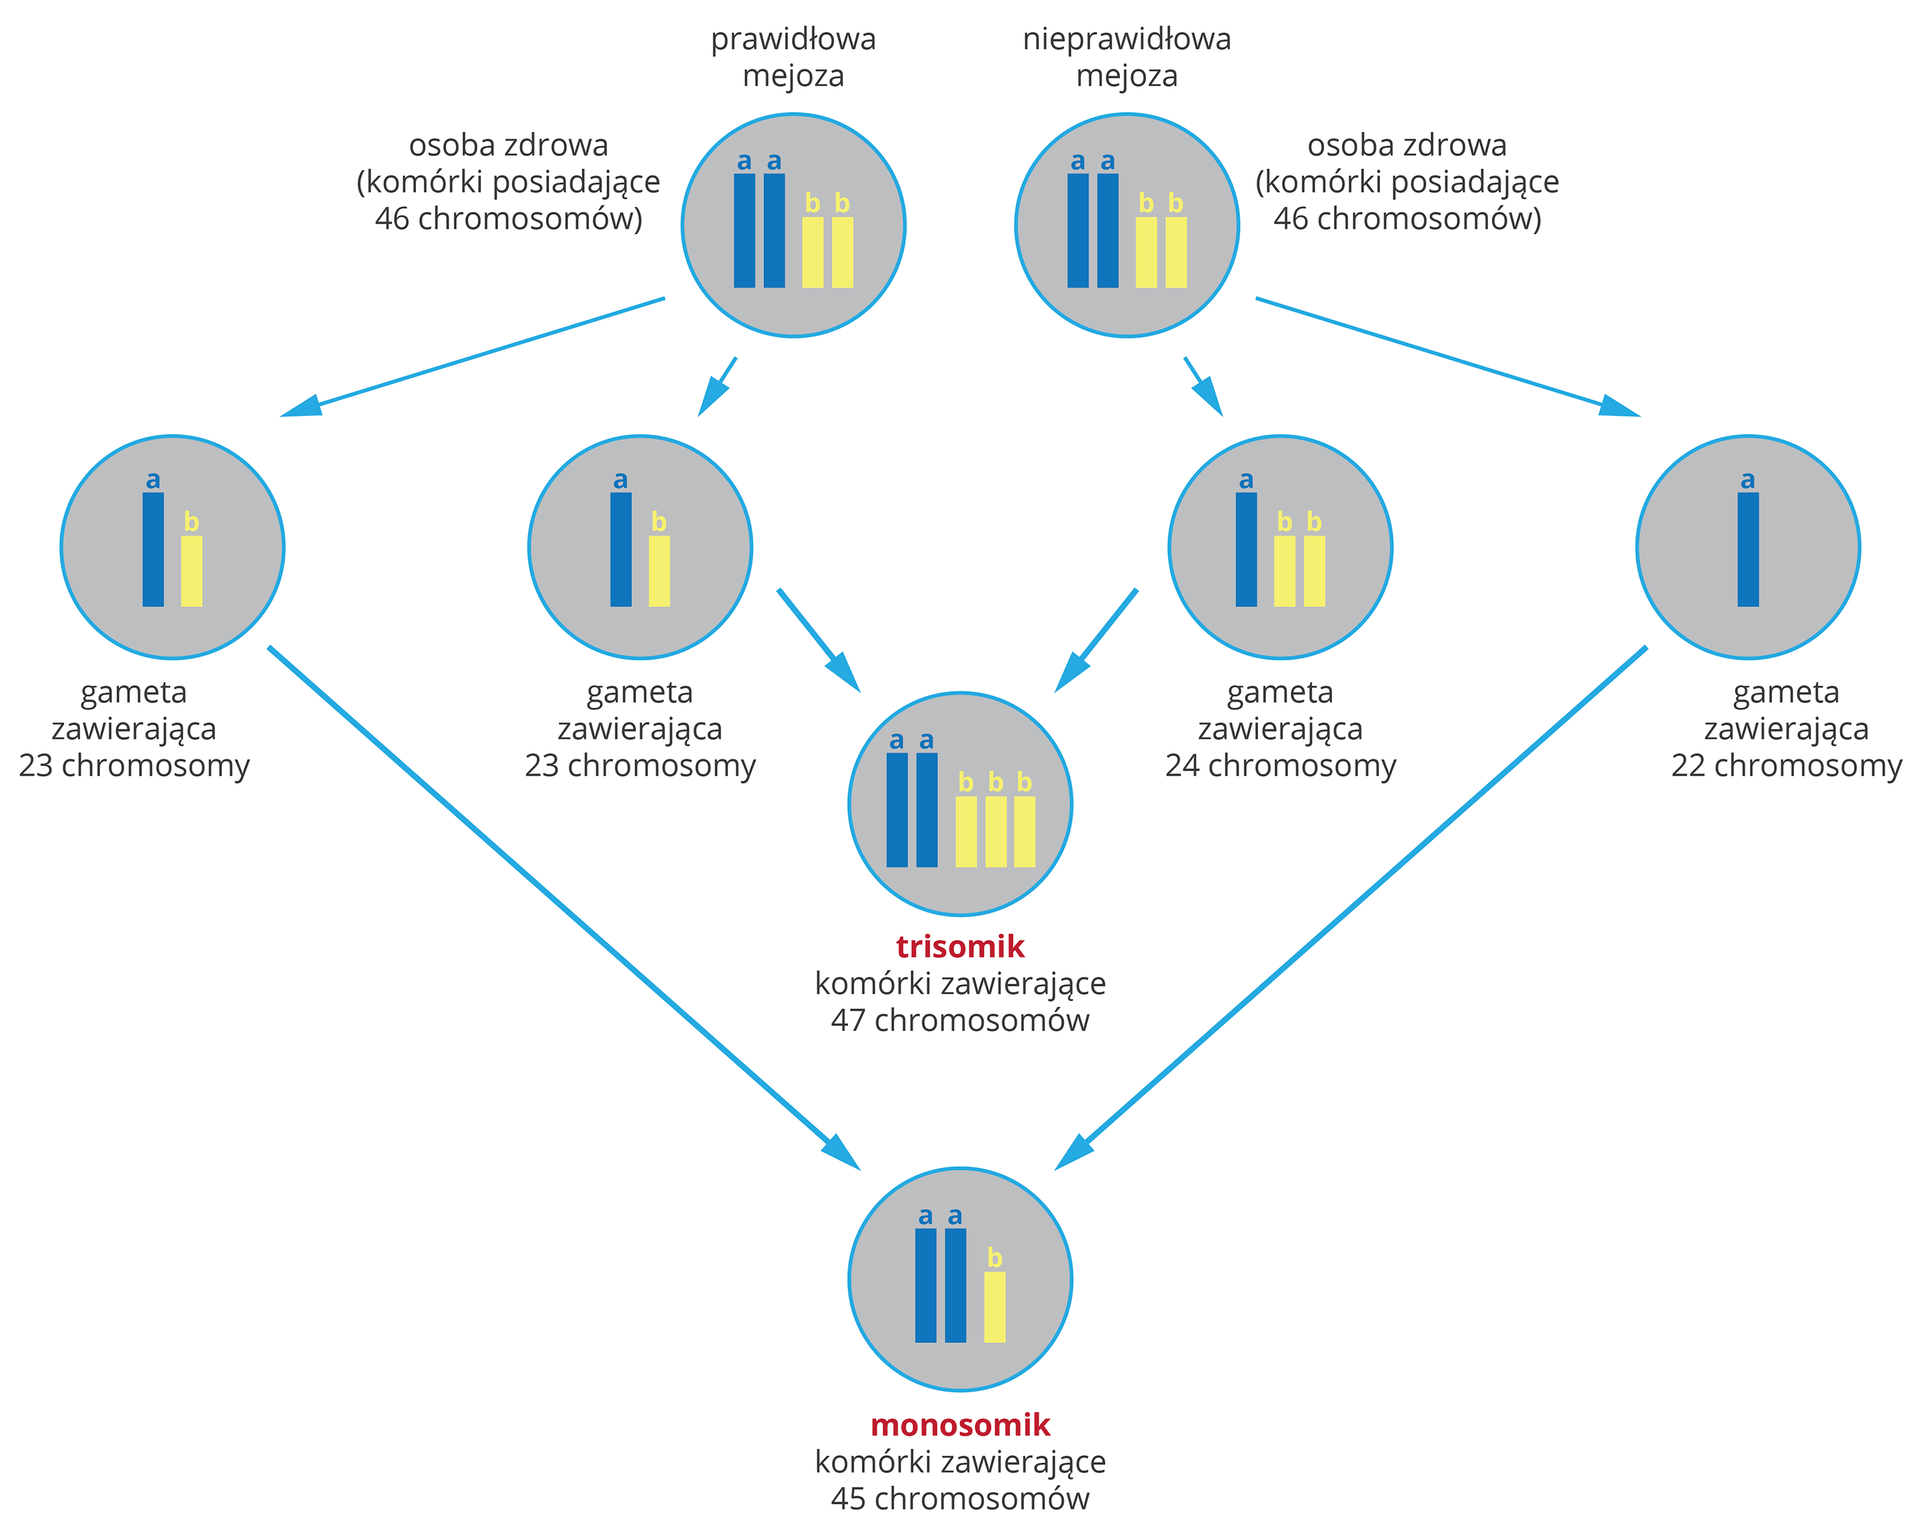 Ilustracja przestawia schemat powstawania mutacjichromosomowych w formie szarych kół z niebieskimi i żółtymi chromosomami. U góry dwie takie same komórki, 46 chromosomów. Ta z lewej przechodzi prawidłowy podział mejotyczny i jej gamety mają po 23 chromosomy. Ta z prawej ma nieprawidłowa mejozę. Jedna gameta ma 24, druga 22 chromosomy. W wyniku połączenia gamet prawidłowych z nieprawidłowymi otrzymamy dwie mutacje chromosomowe. Trisomik ma 47 chromosomów w komórkach ciała. Monosomik ma 45 chromosomów w komórkach ciała.